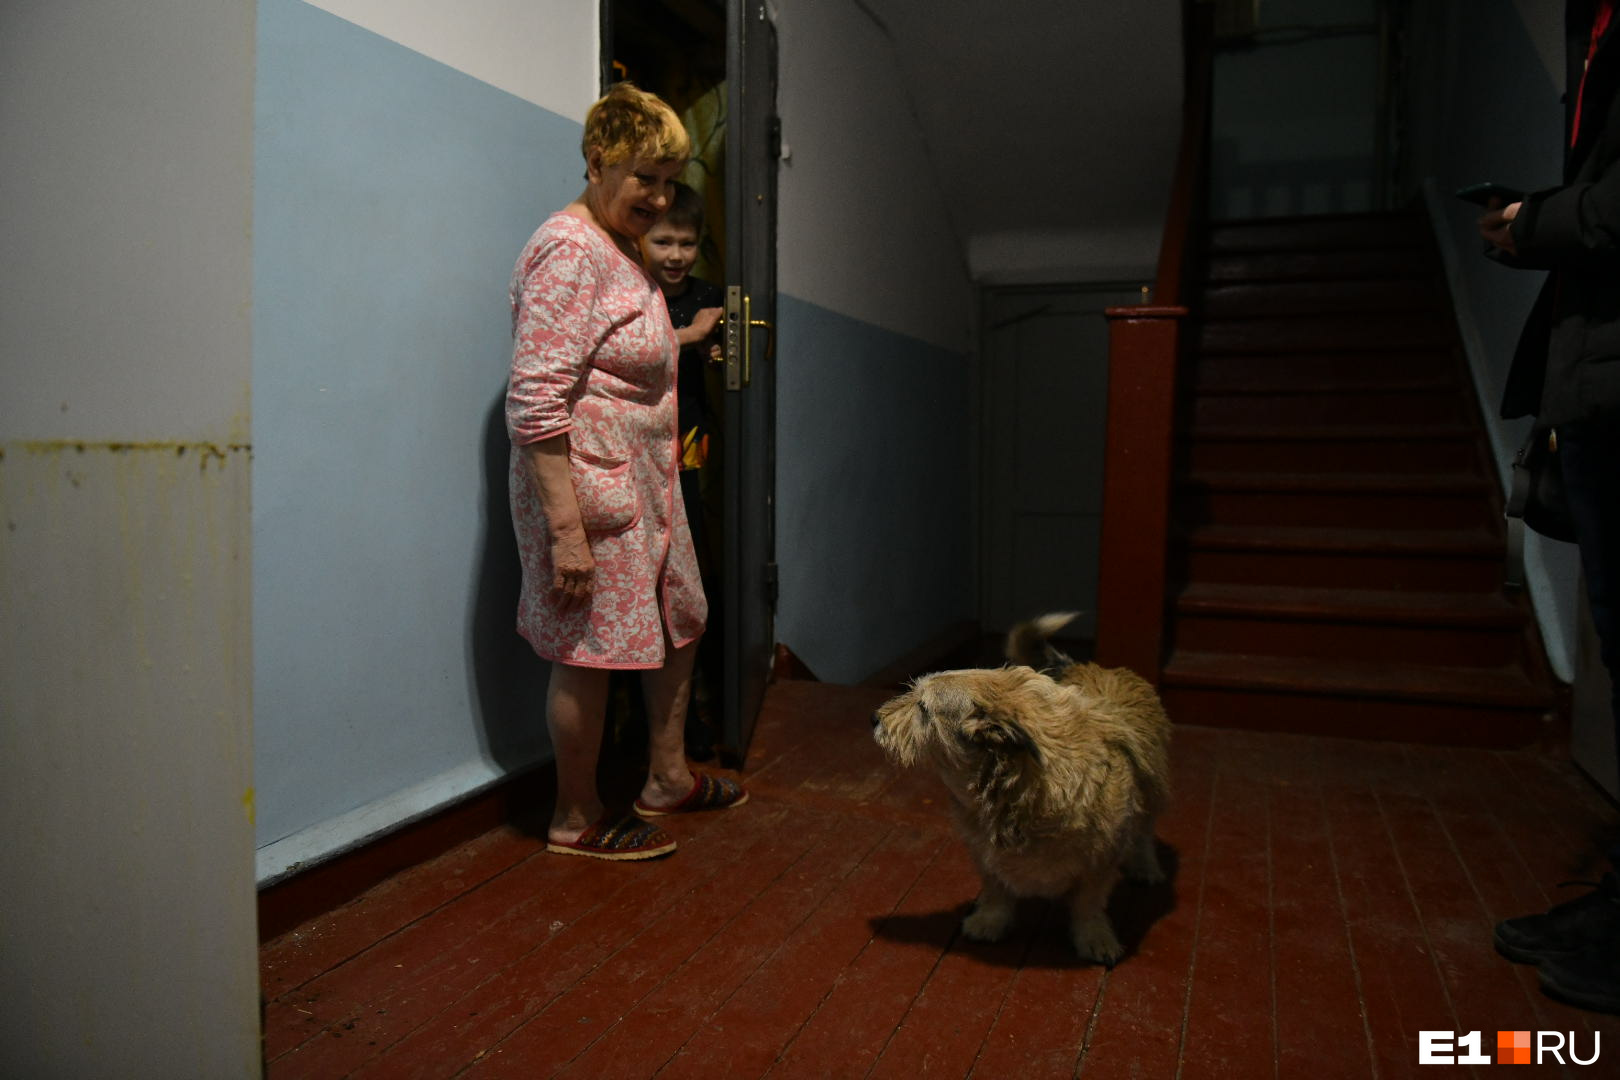 В подъезде живет дружелюбный пес, который охраняет покой жильцов дома